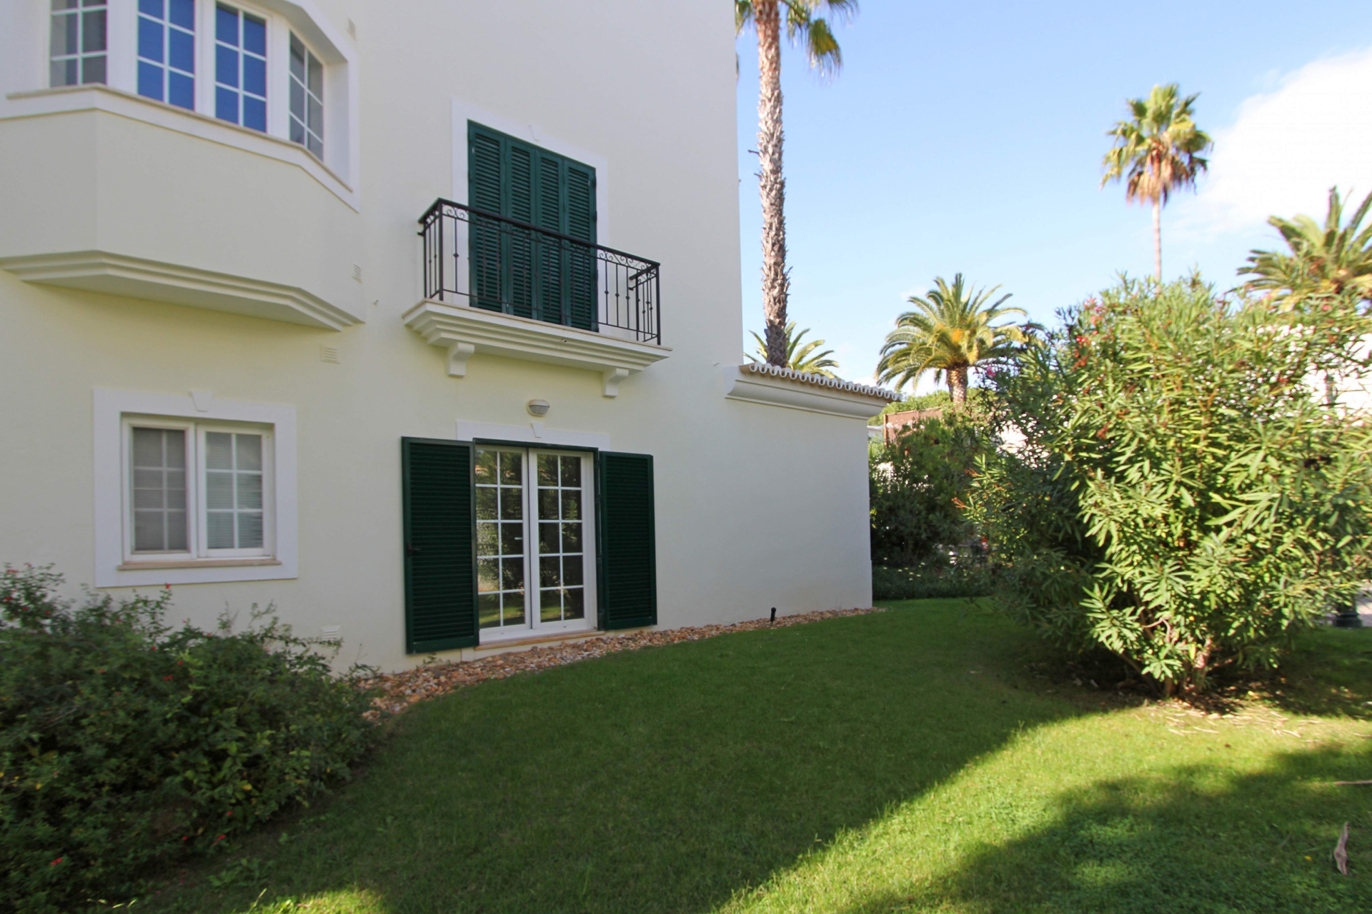 Apartamento en venta, cerca de playa, Vale do Lobo, Algarve, Portugal_120393